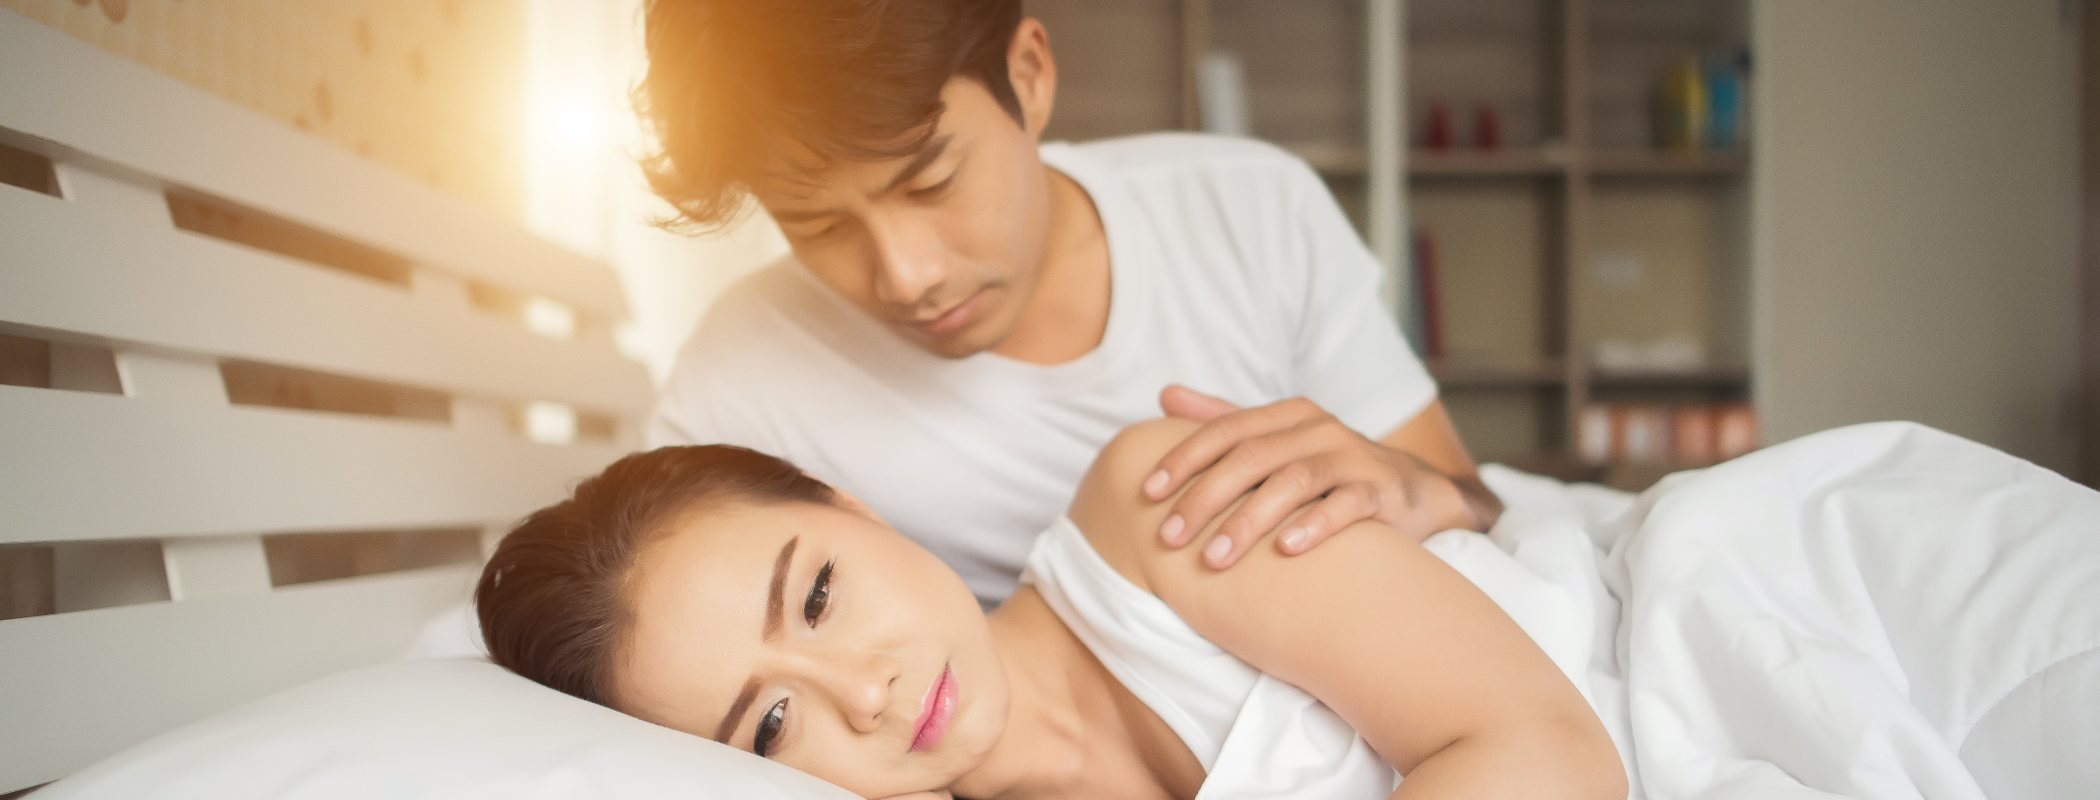 Mi novia no logra llegar al orgasmo: ¿Qué ocurre?